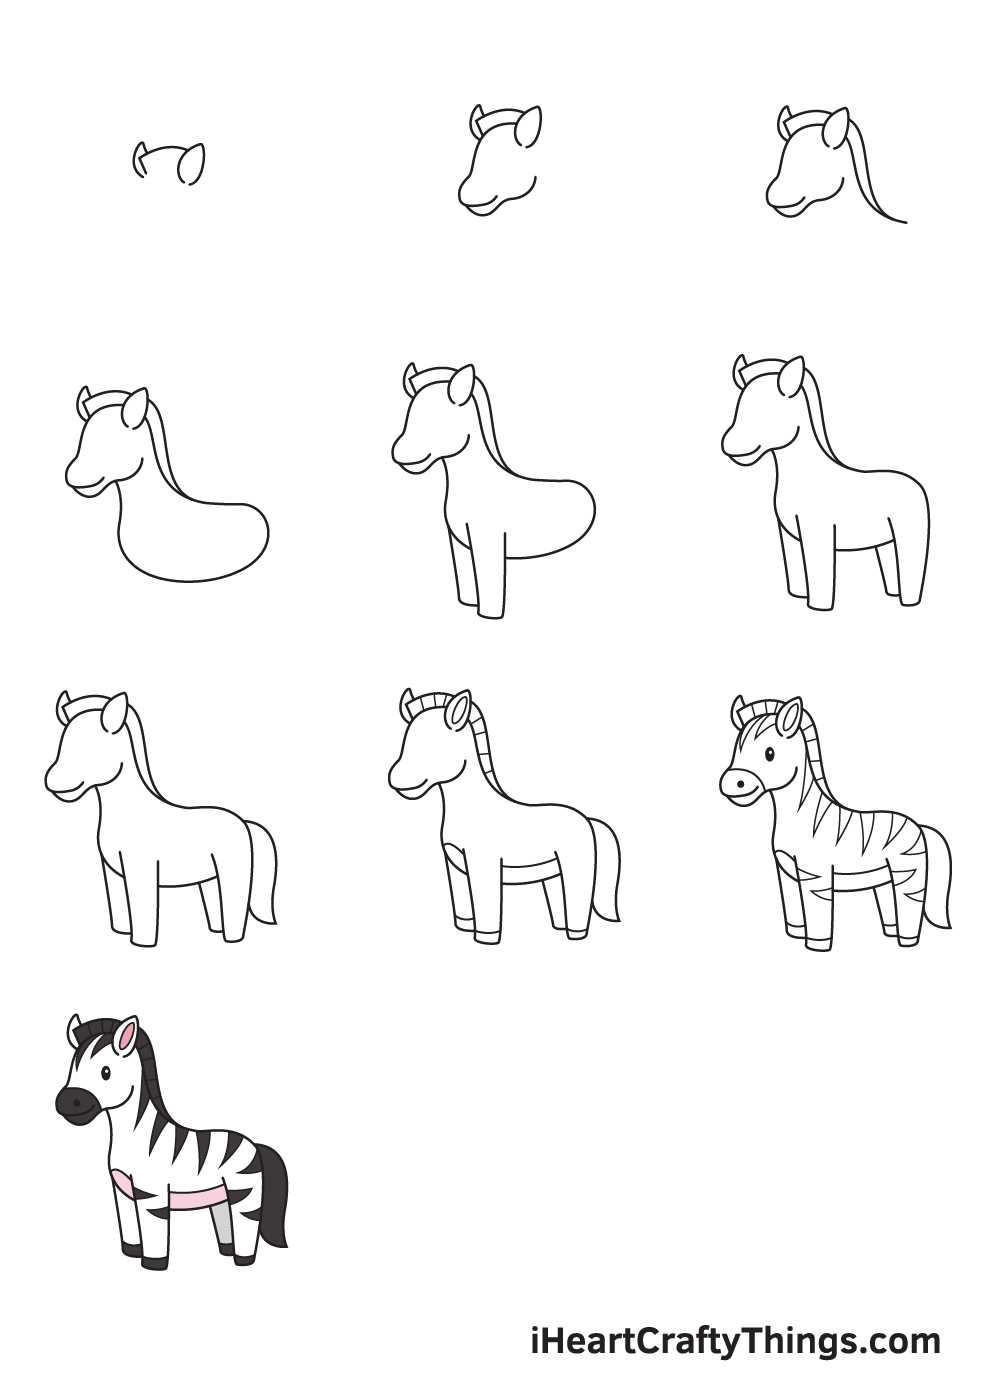 Drawing Zebra in 10 Easy Steps - Hướng dẫn cách vẽ con ngựa vằn đơn giản với 9 bước cơ bản